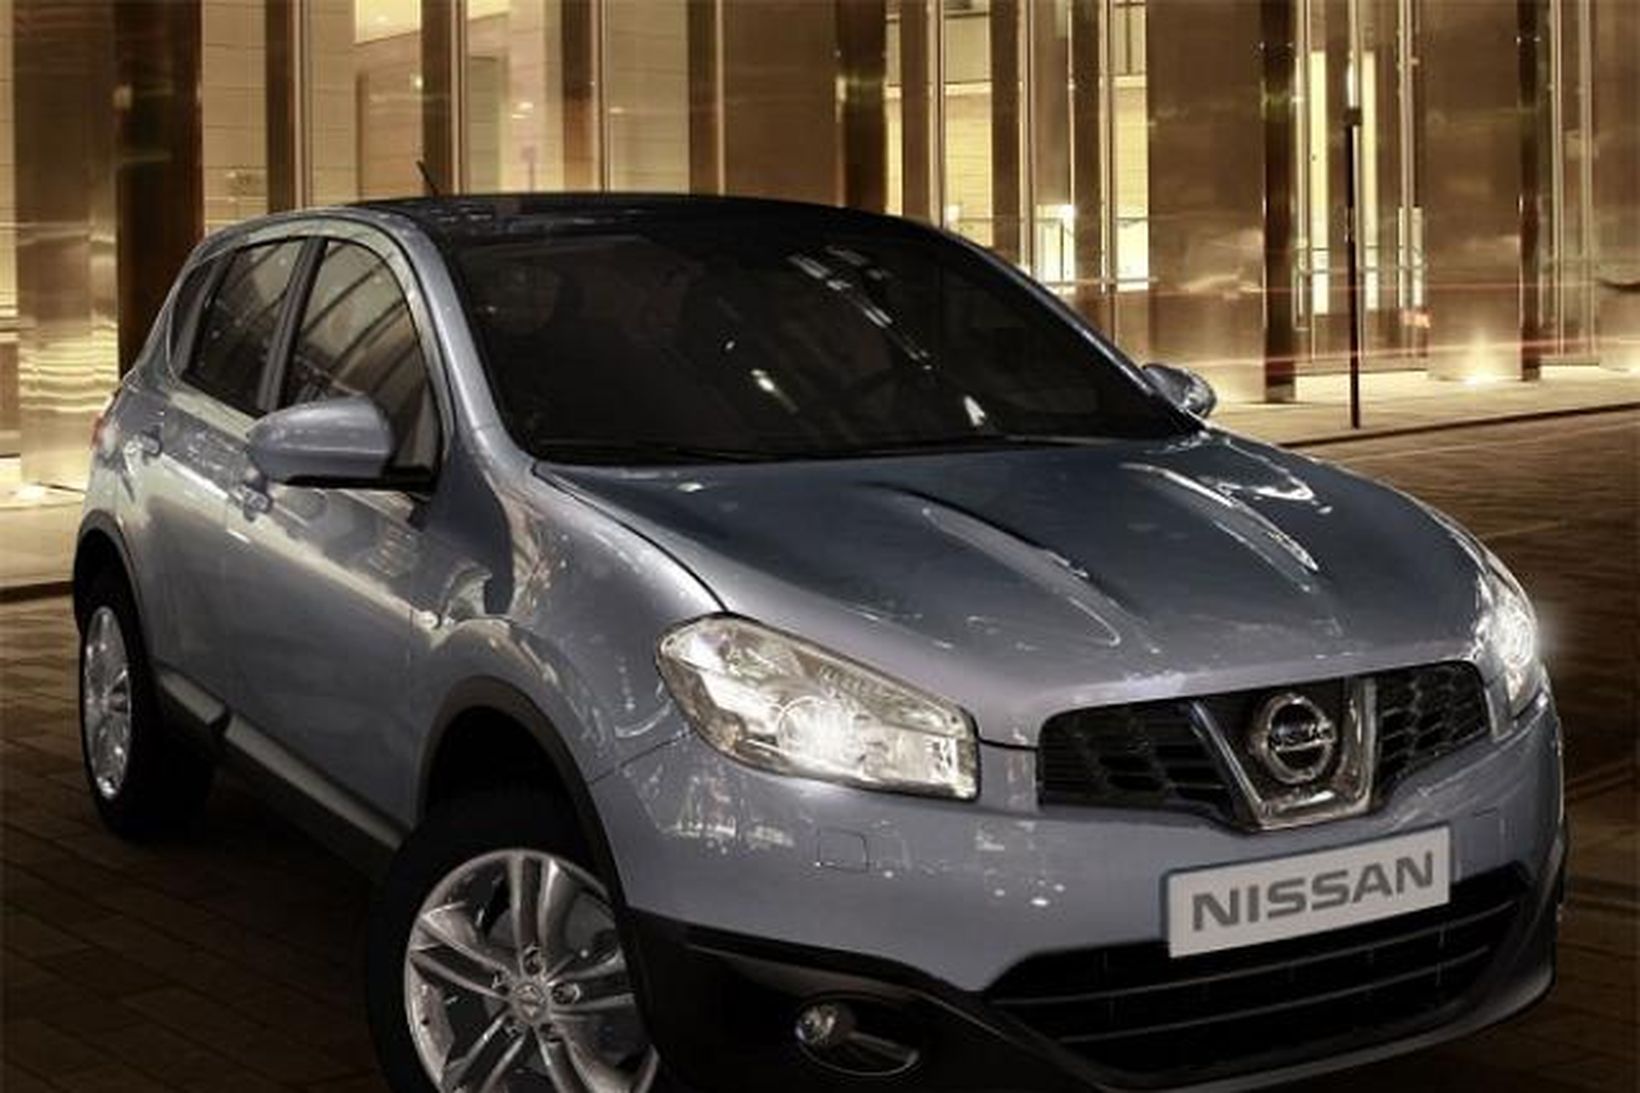 Jepplingurinn með einkennilega nafnið, Nissan Qashqai hefur notið feykilegra vinsælda …